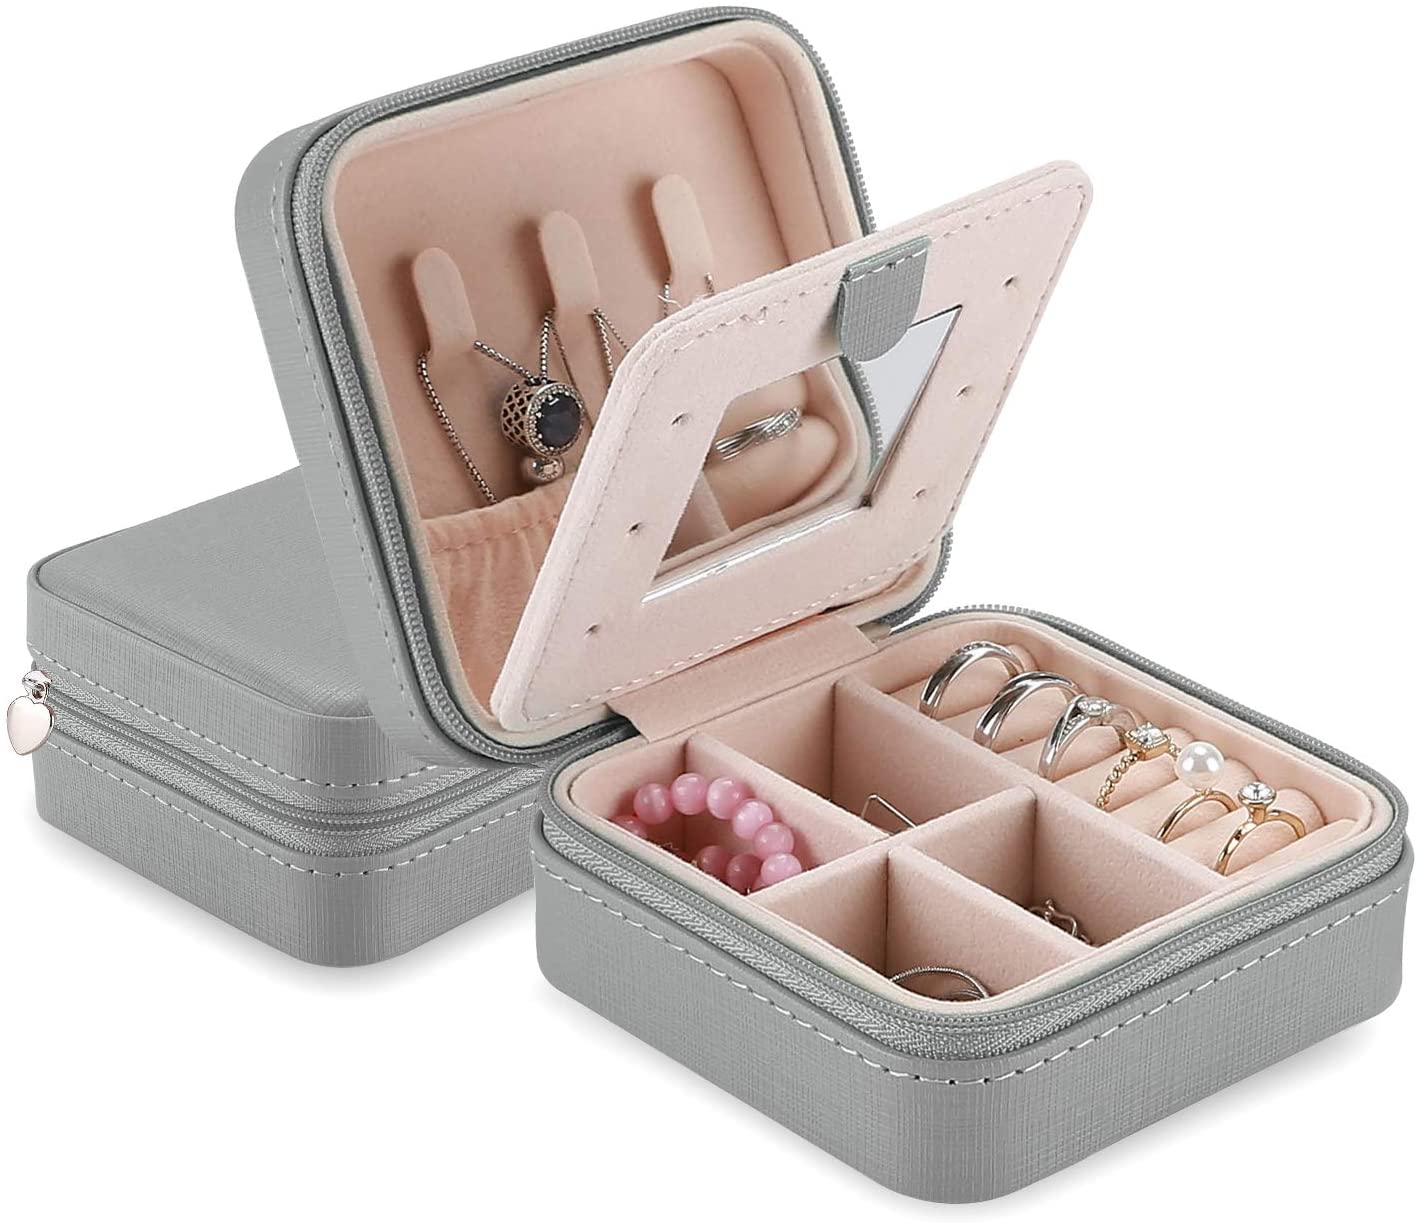 Jewelry Box Girls Jewelry Organizer Mini Travel Case | ProCase grey